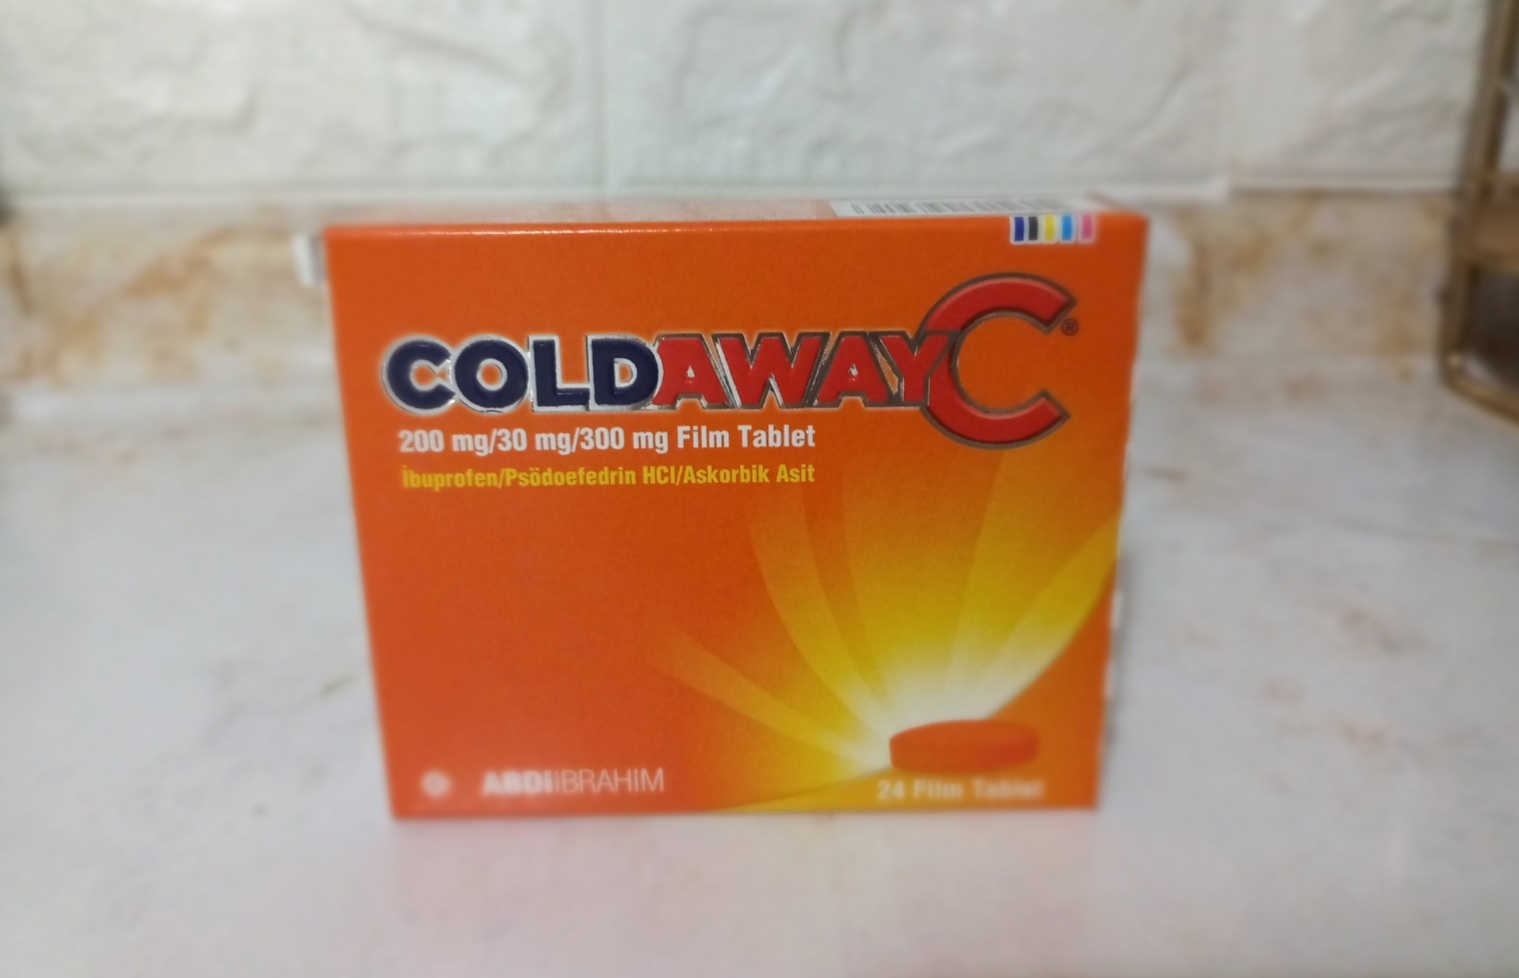 Coldaway C Nedir Ne İçin Kullanılır?